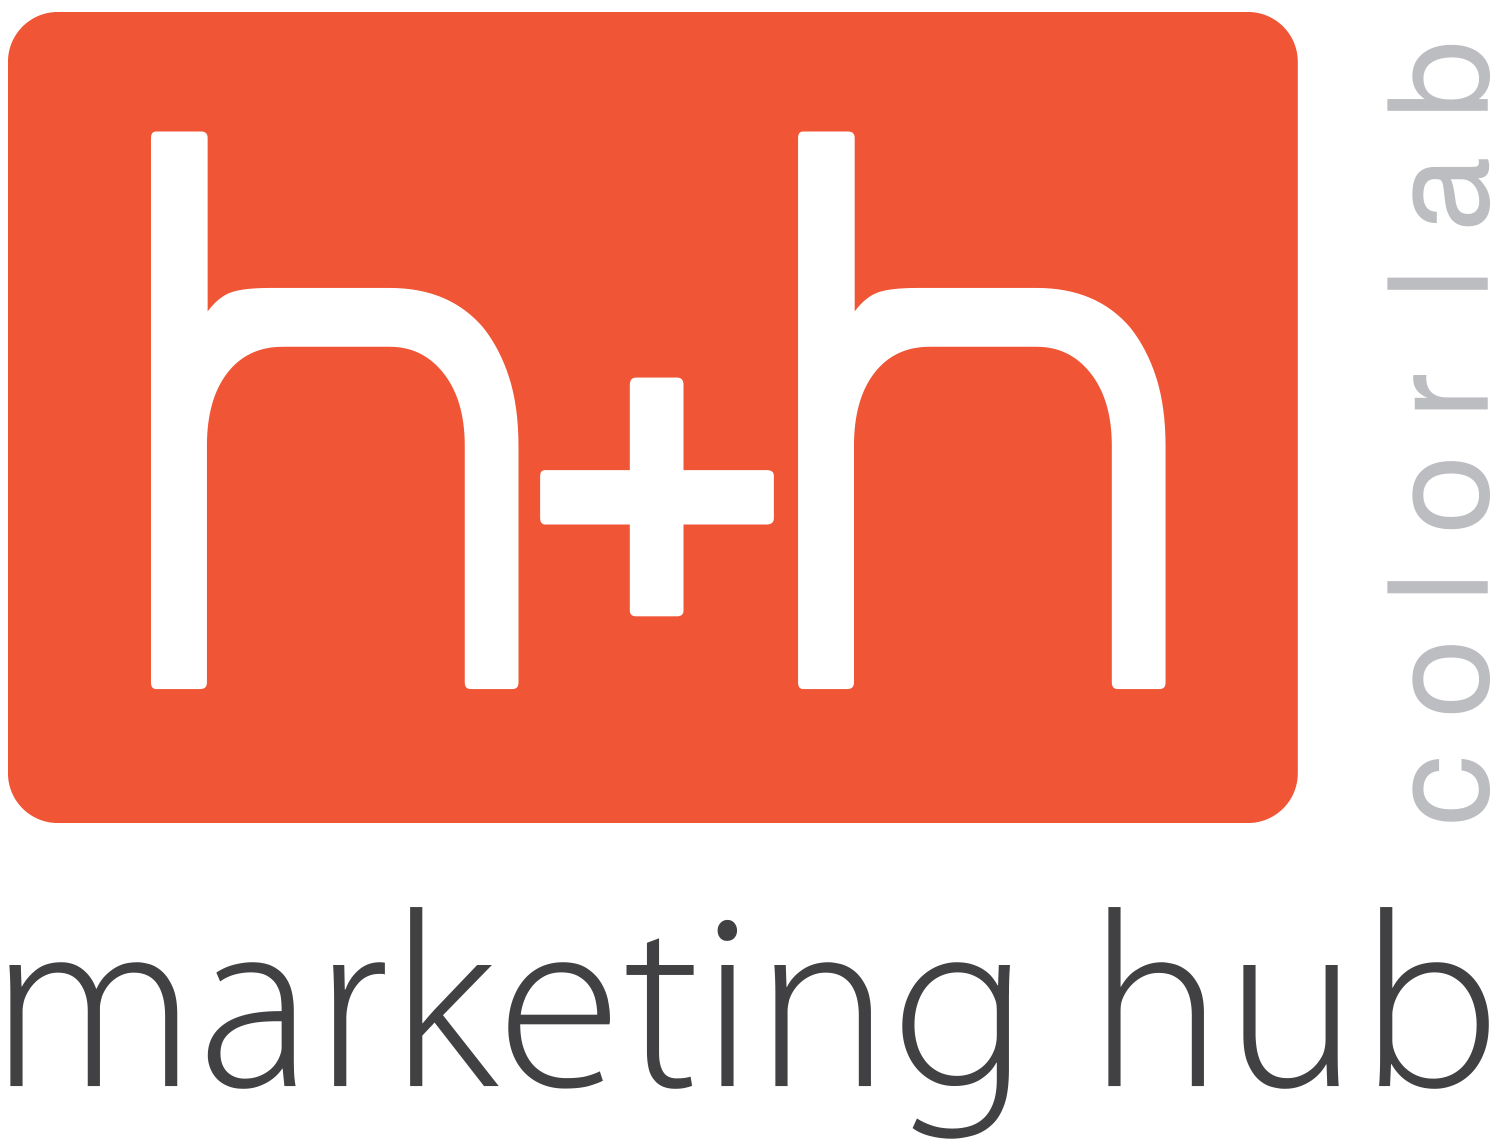 H&H Marketing Hub